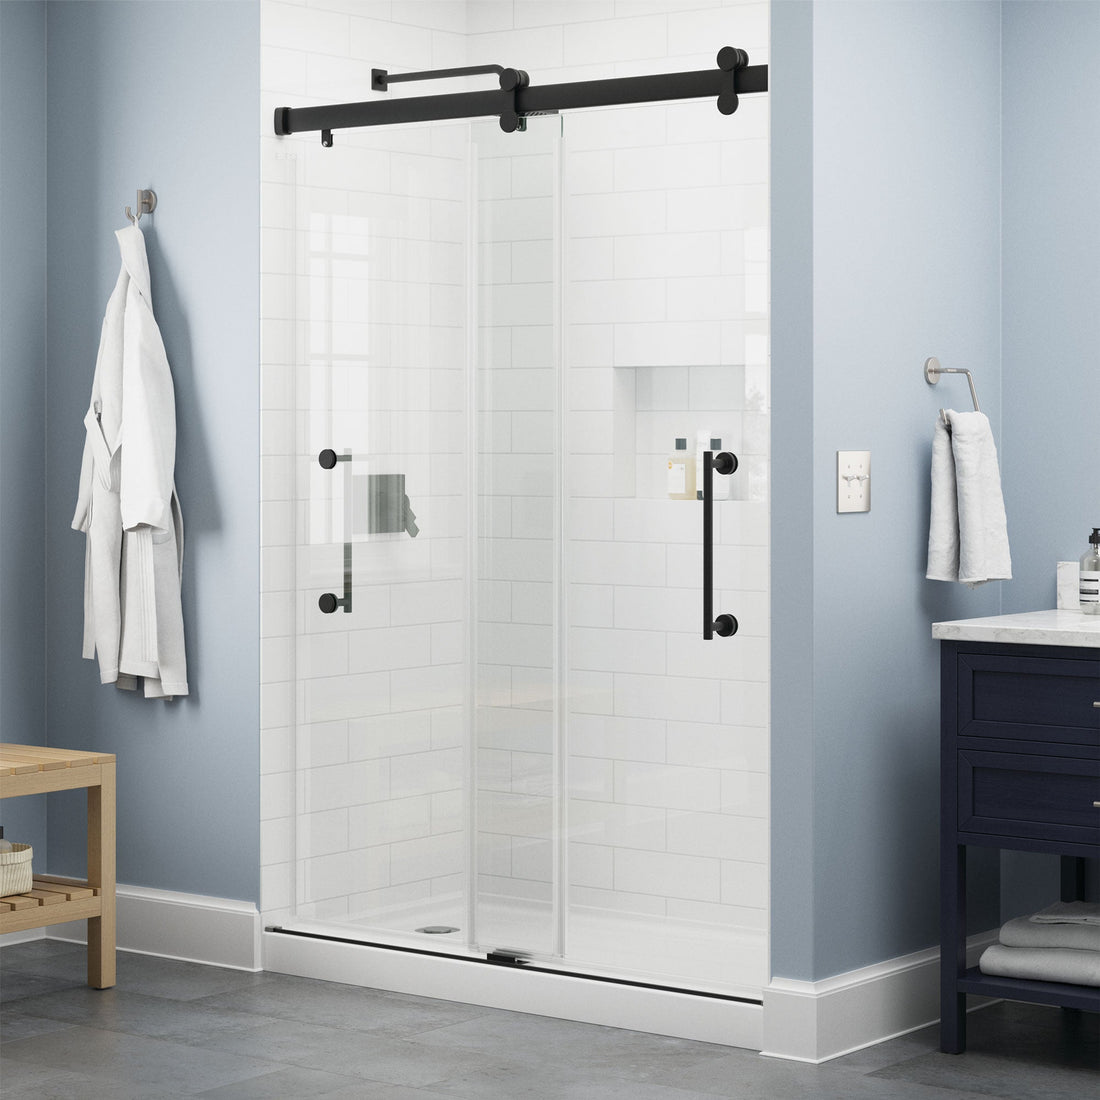 How to Choose a Shower Door